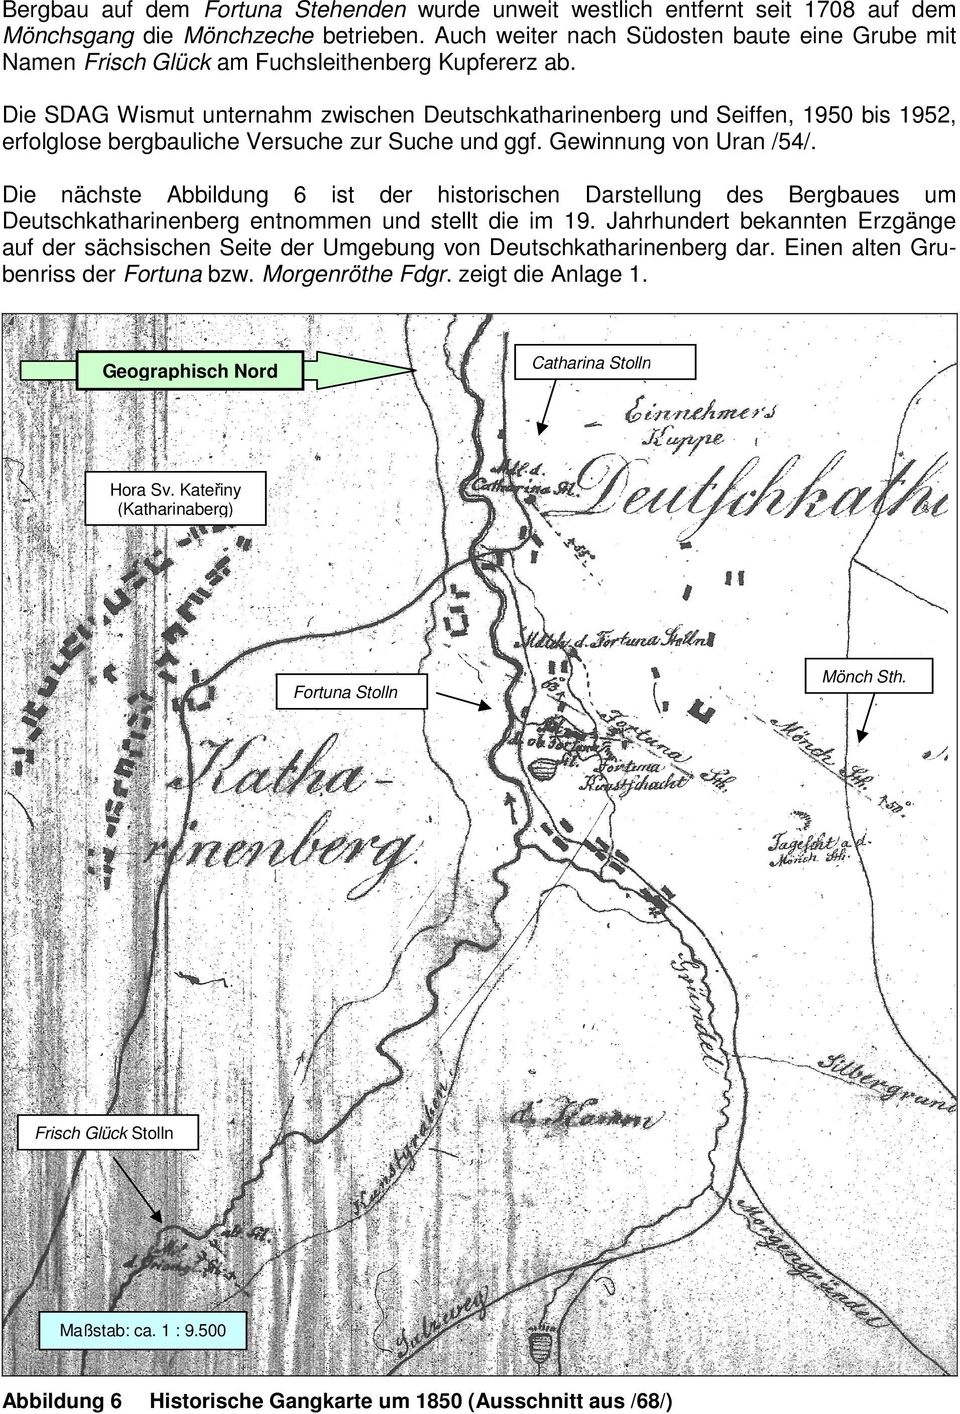 Die SDAG Wismut unternahm zwischen Deutschkatharinenberg und Seiffen, 1950 bis 1952, erfolglose bergbauliche Versuche zur Suche und ggf. Gewinnung von Uran /54/.